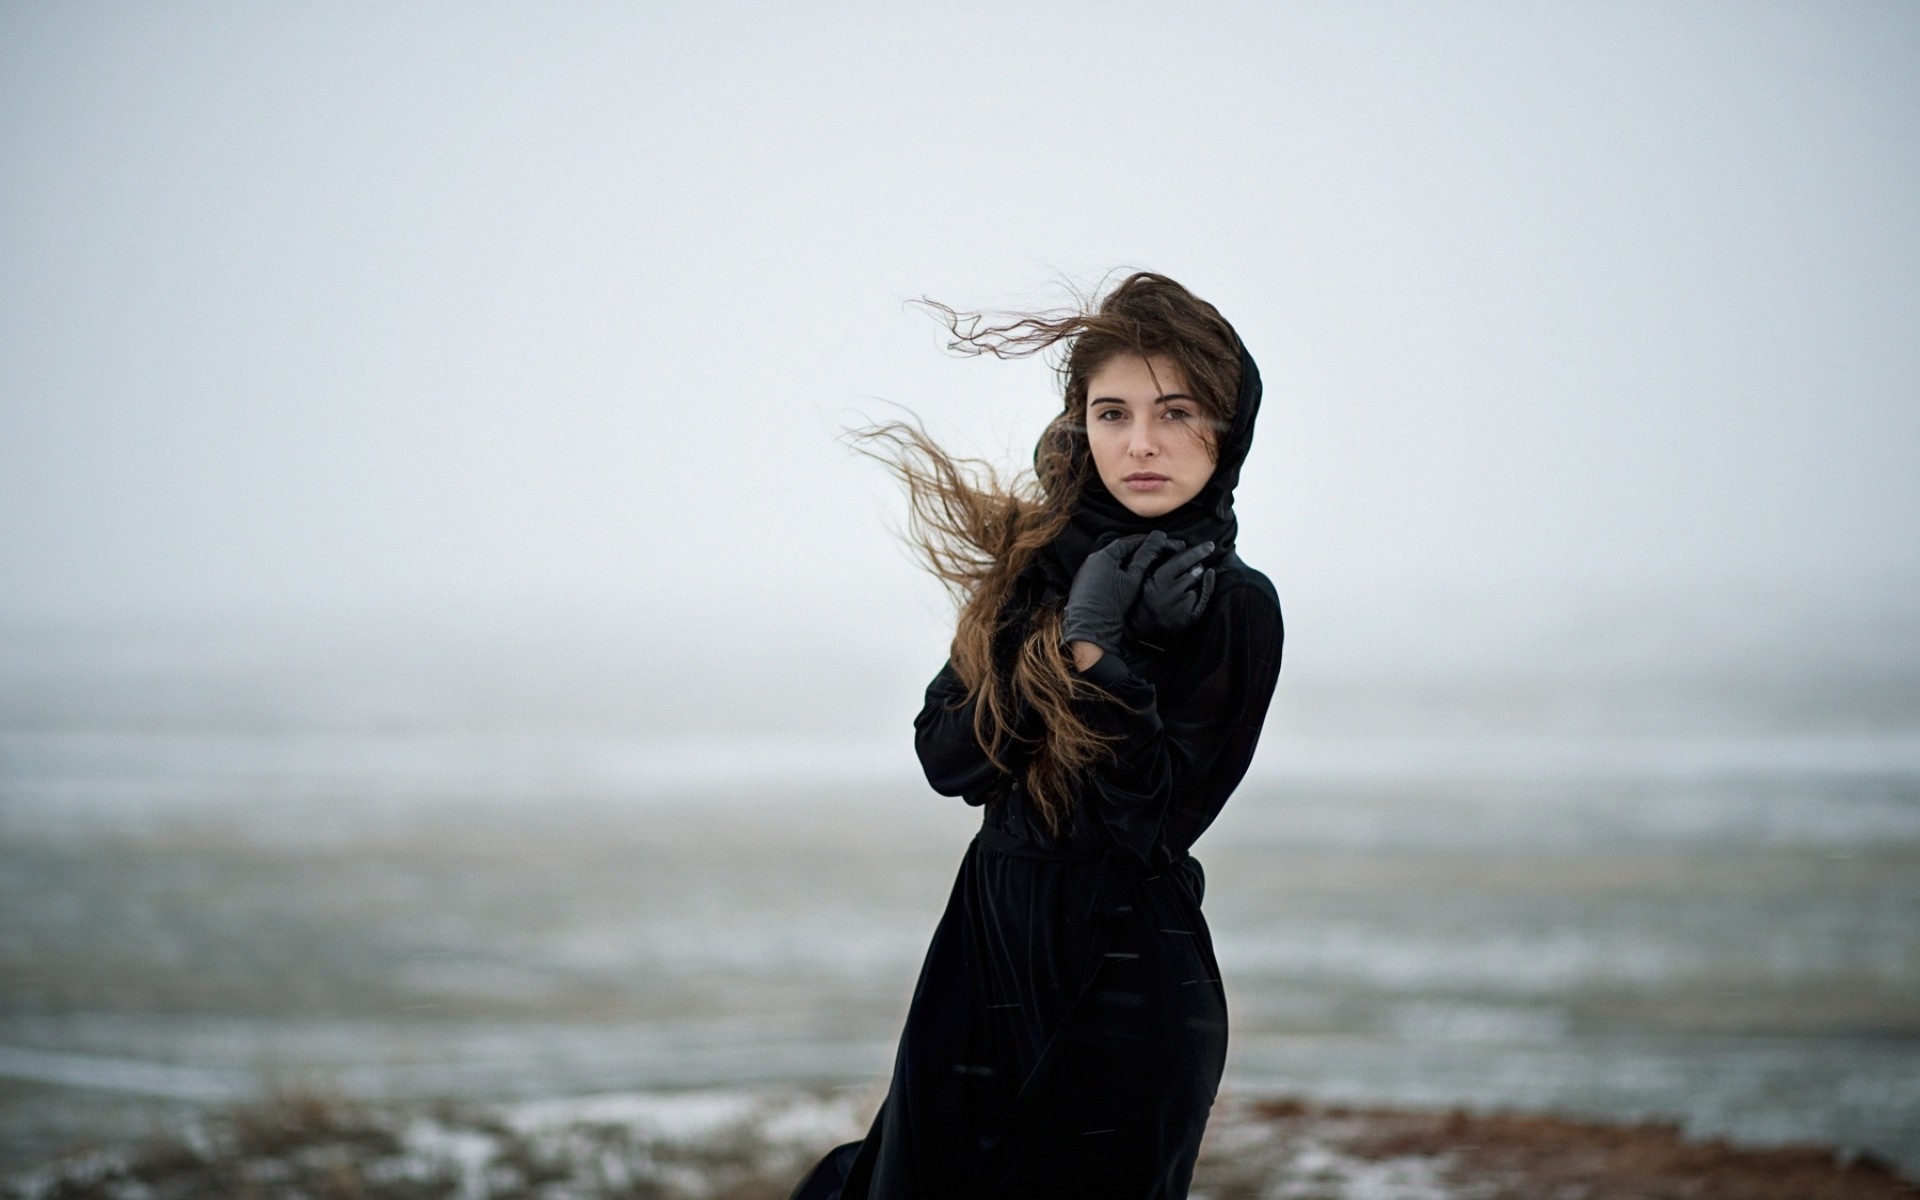 Молодая девушка еще она была. Девушка в пальто. Девушка у моря зимой. Девушка на ветру. Девушка на берегу моря.